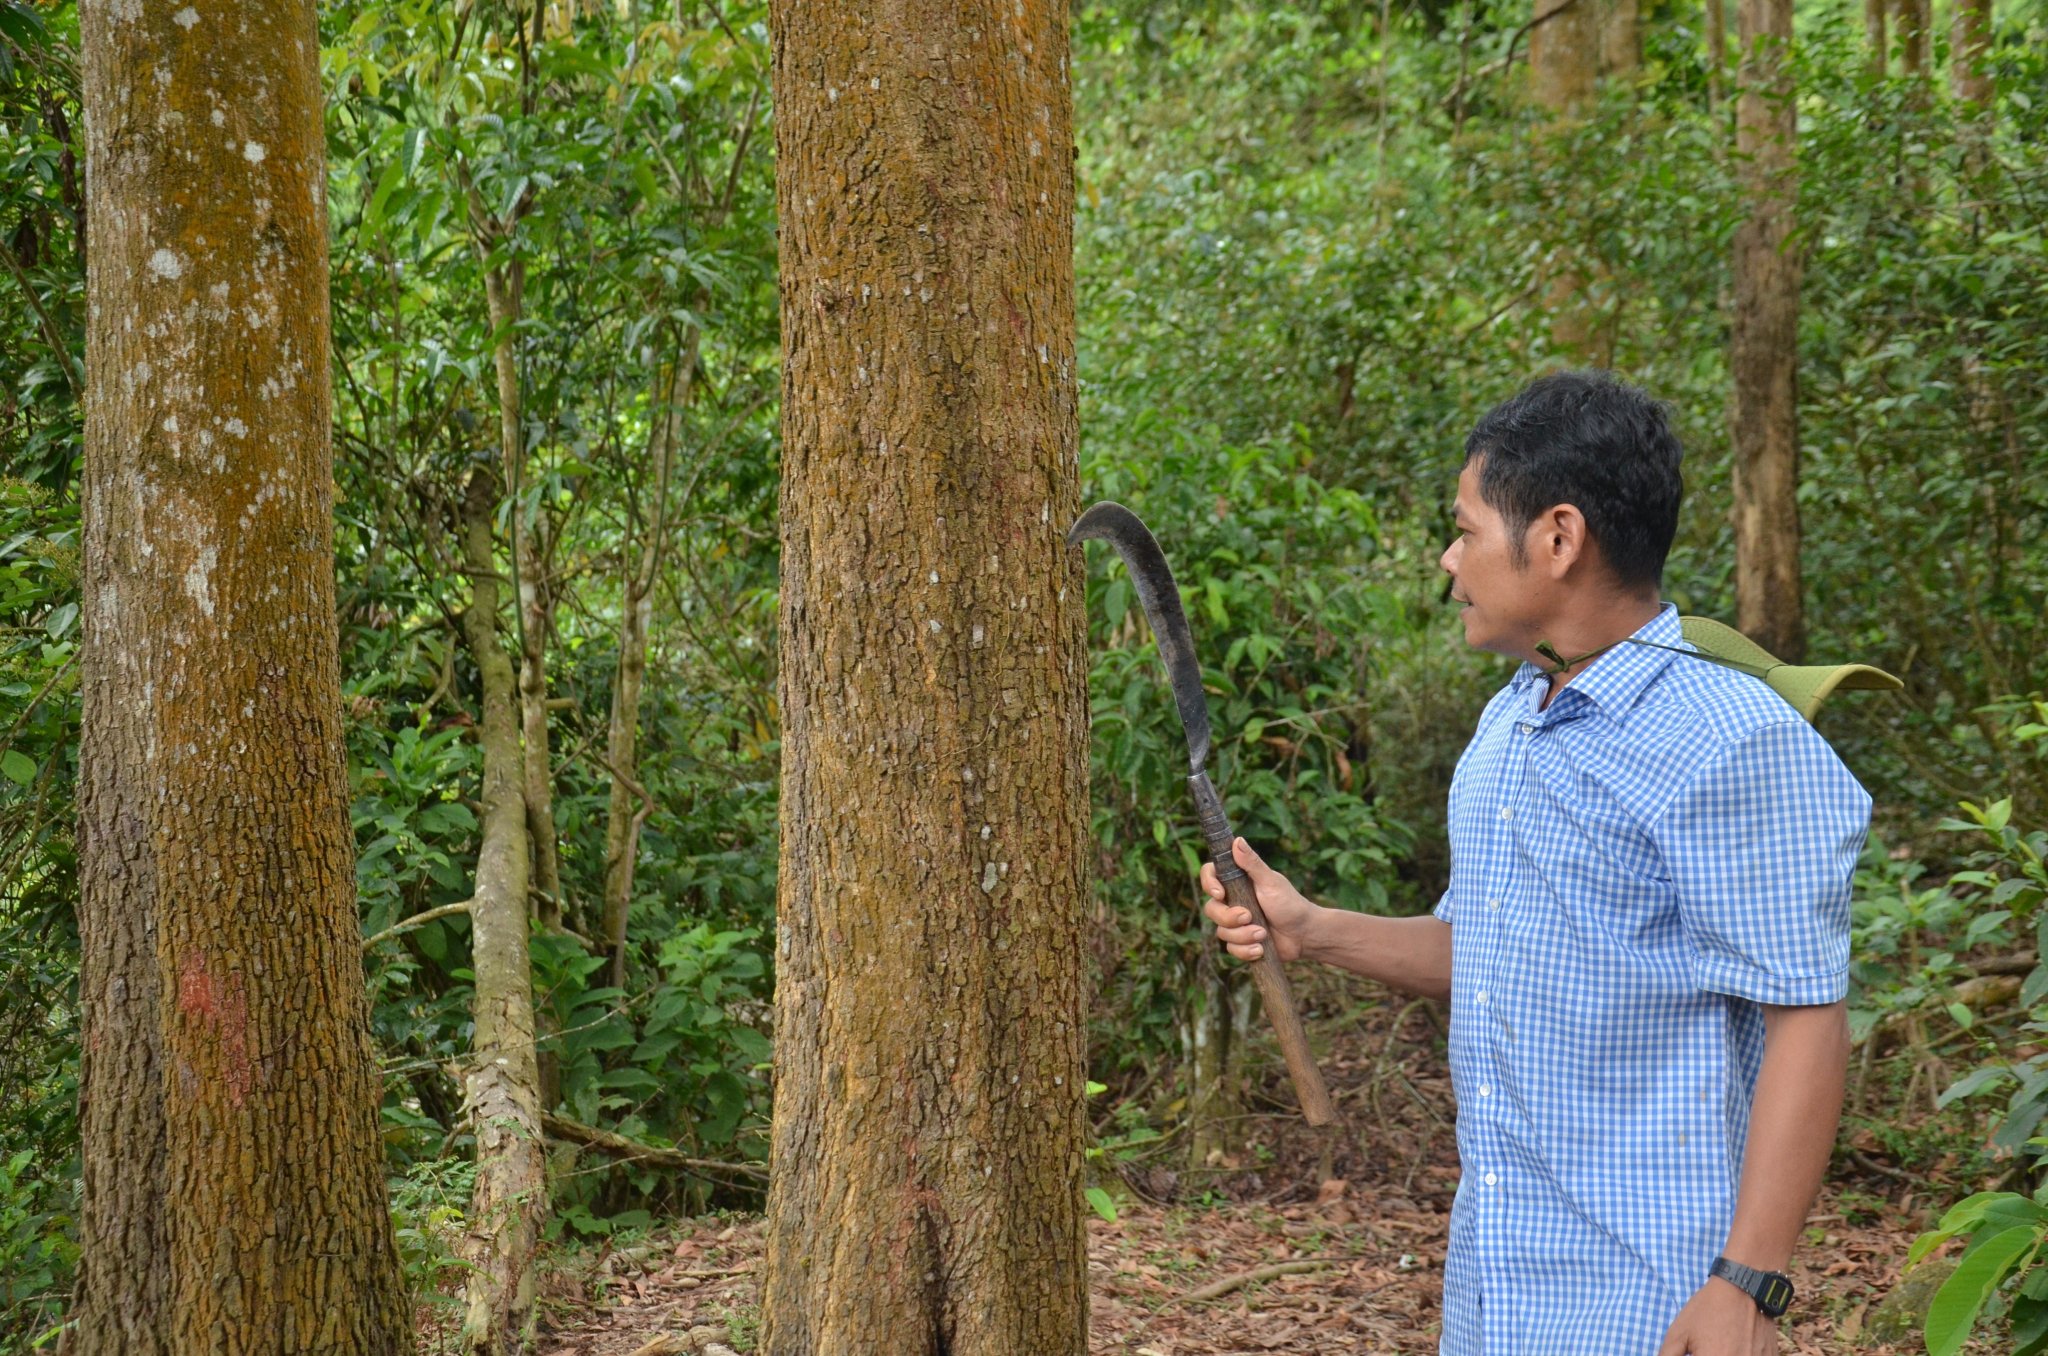 Nhờ tham gia bảo vệ rừng, nên hằng năm hộ gia đình ông Đinh Văn Cư ở thôn Gò Tranh, xã Long Sơn, huyện Minh Long nhận được một khoảng thu nhập khá. Ảnh: Ngọc Viên